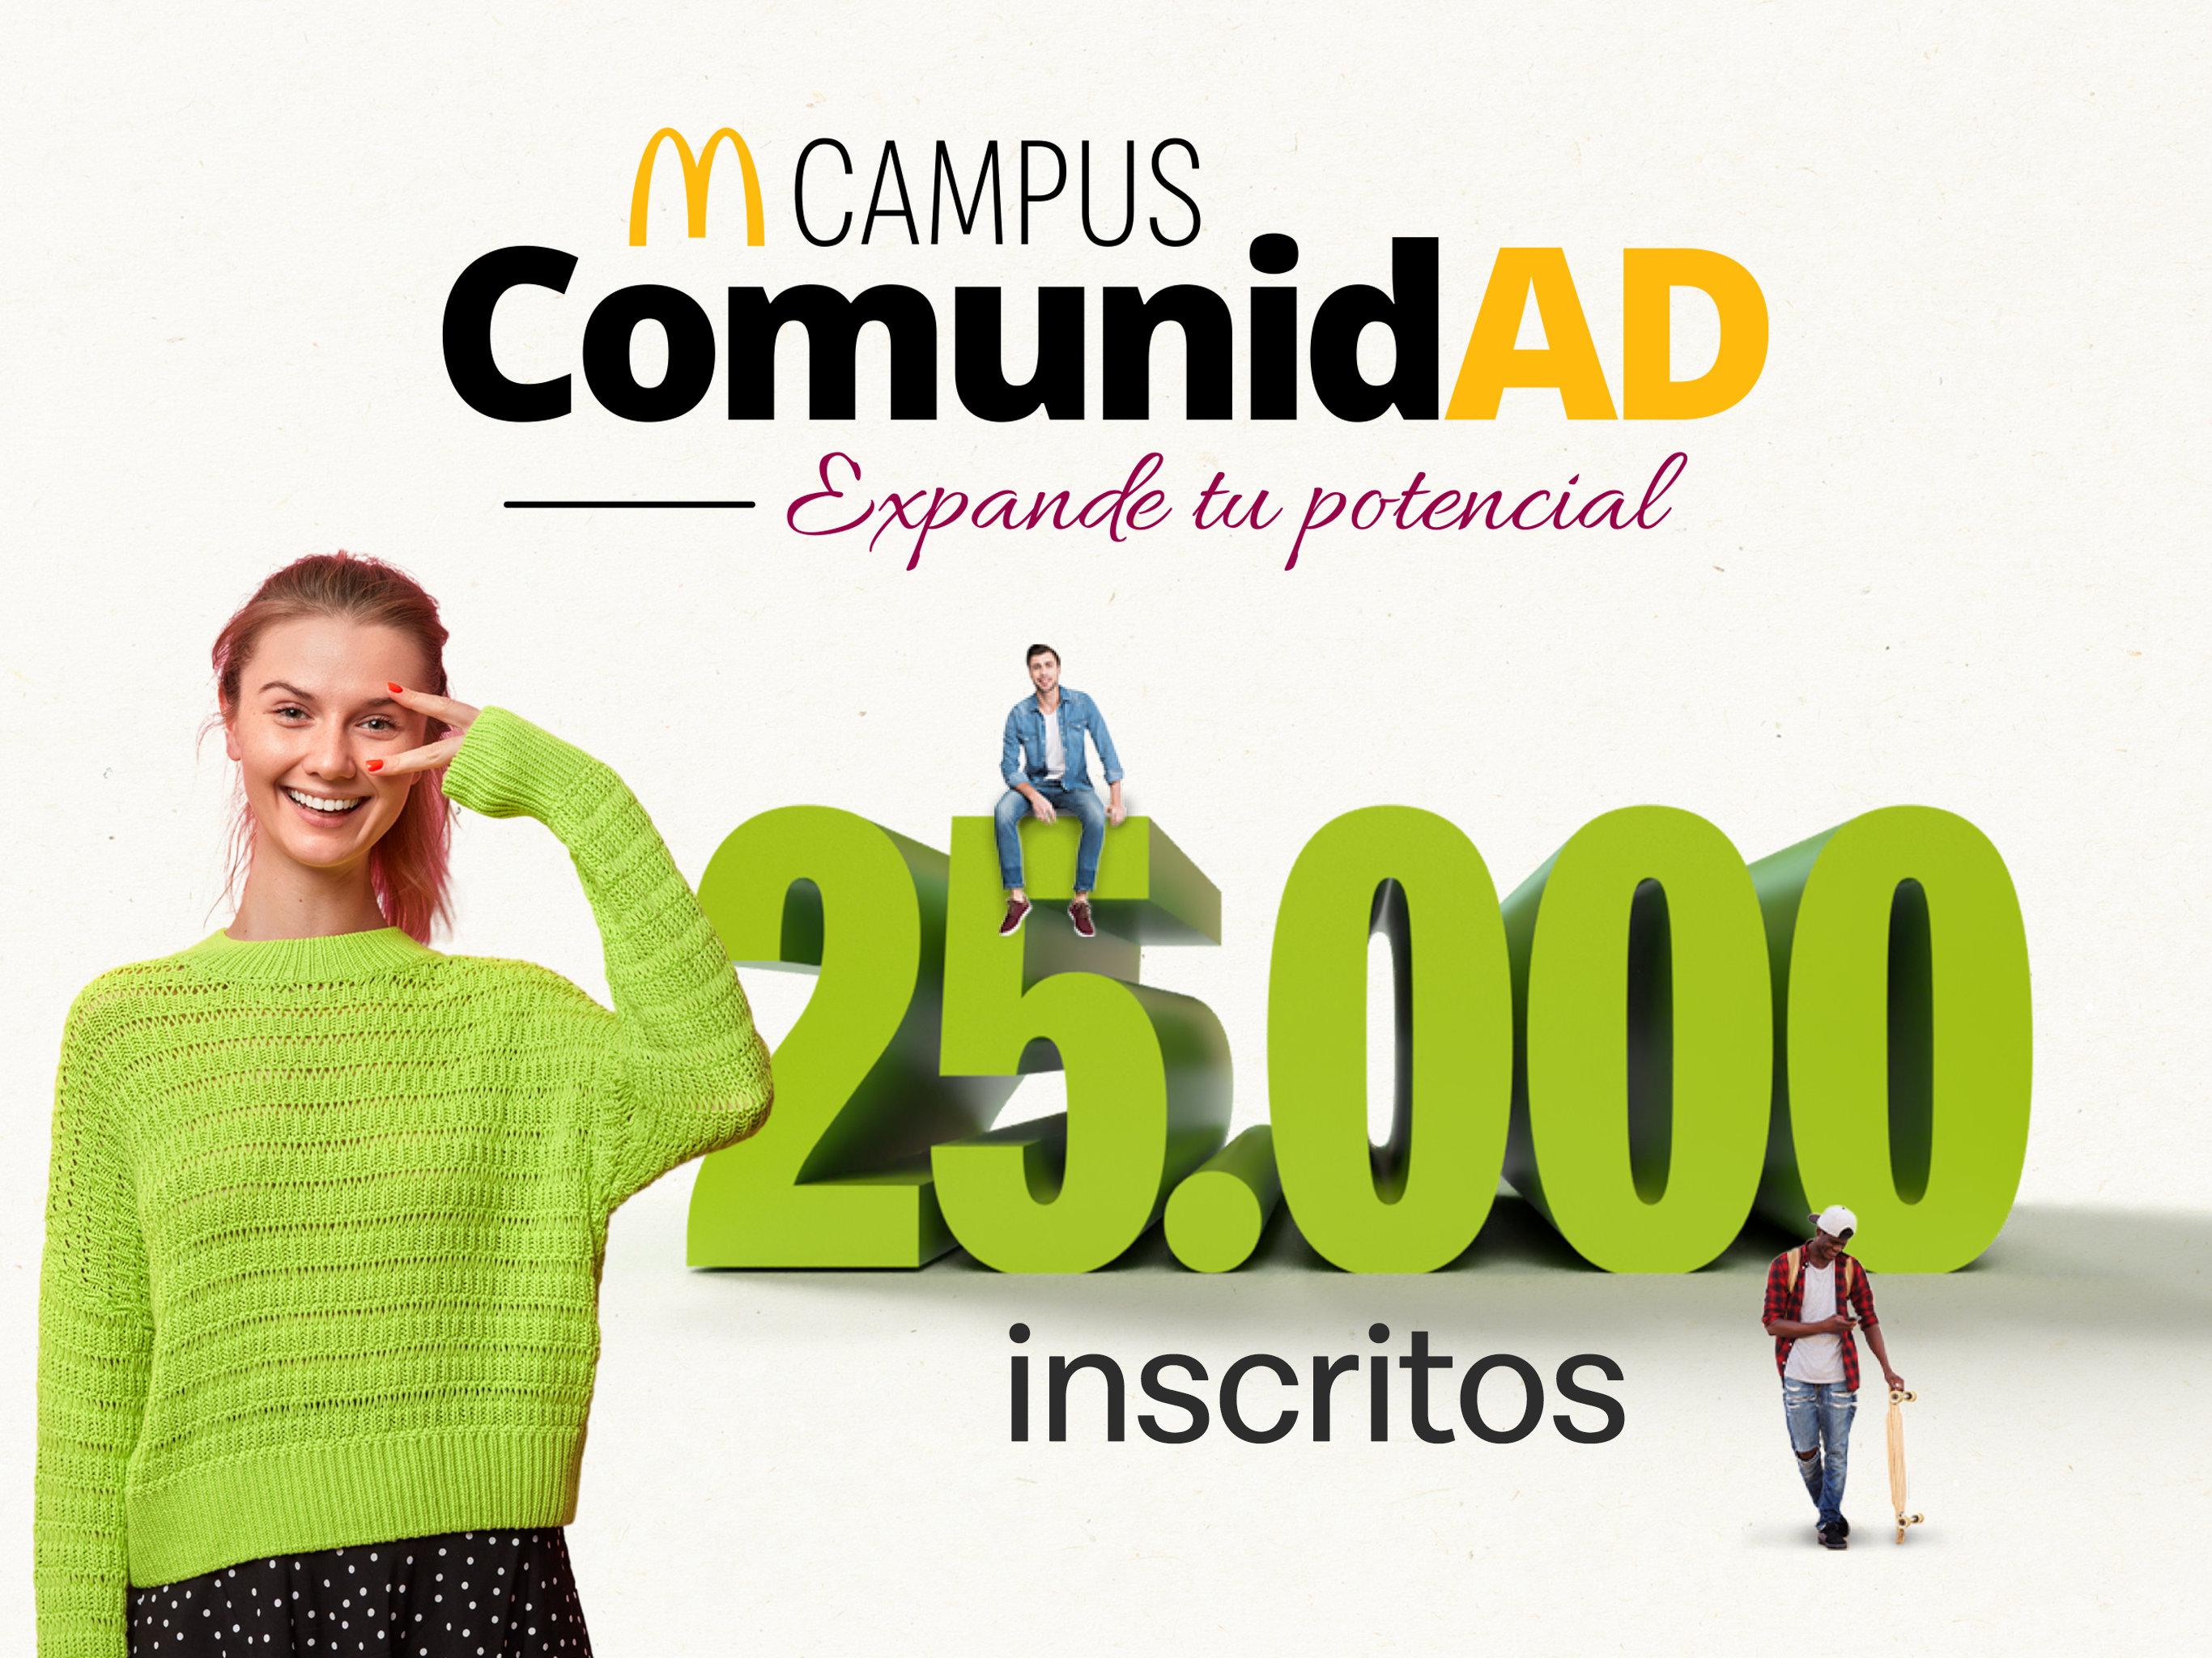 Celebramos os 25.000 inscritos em nossa plataforma educacional gratuita MCampus Comunidade